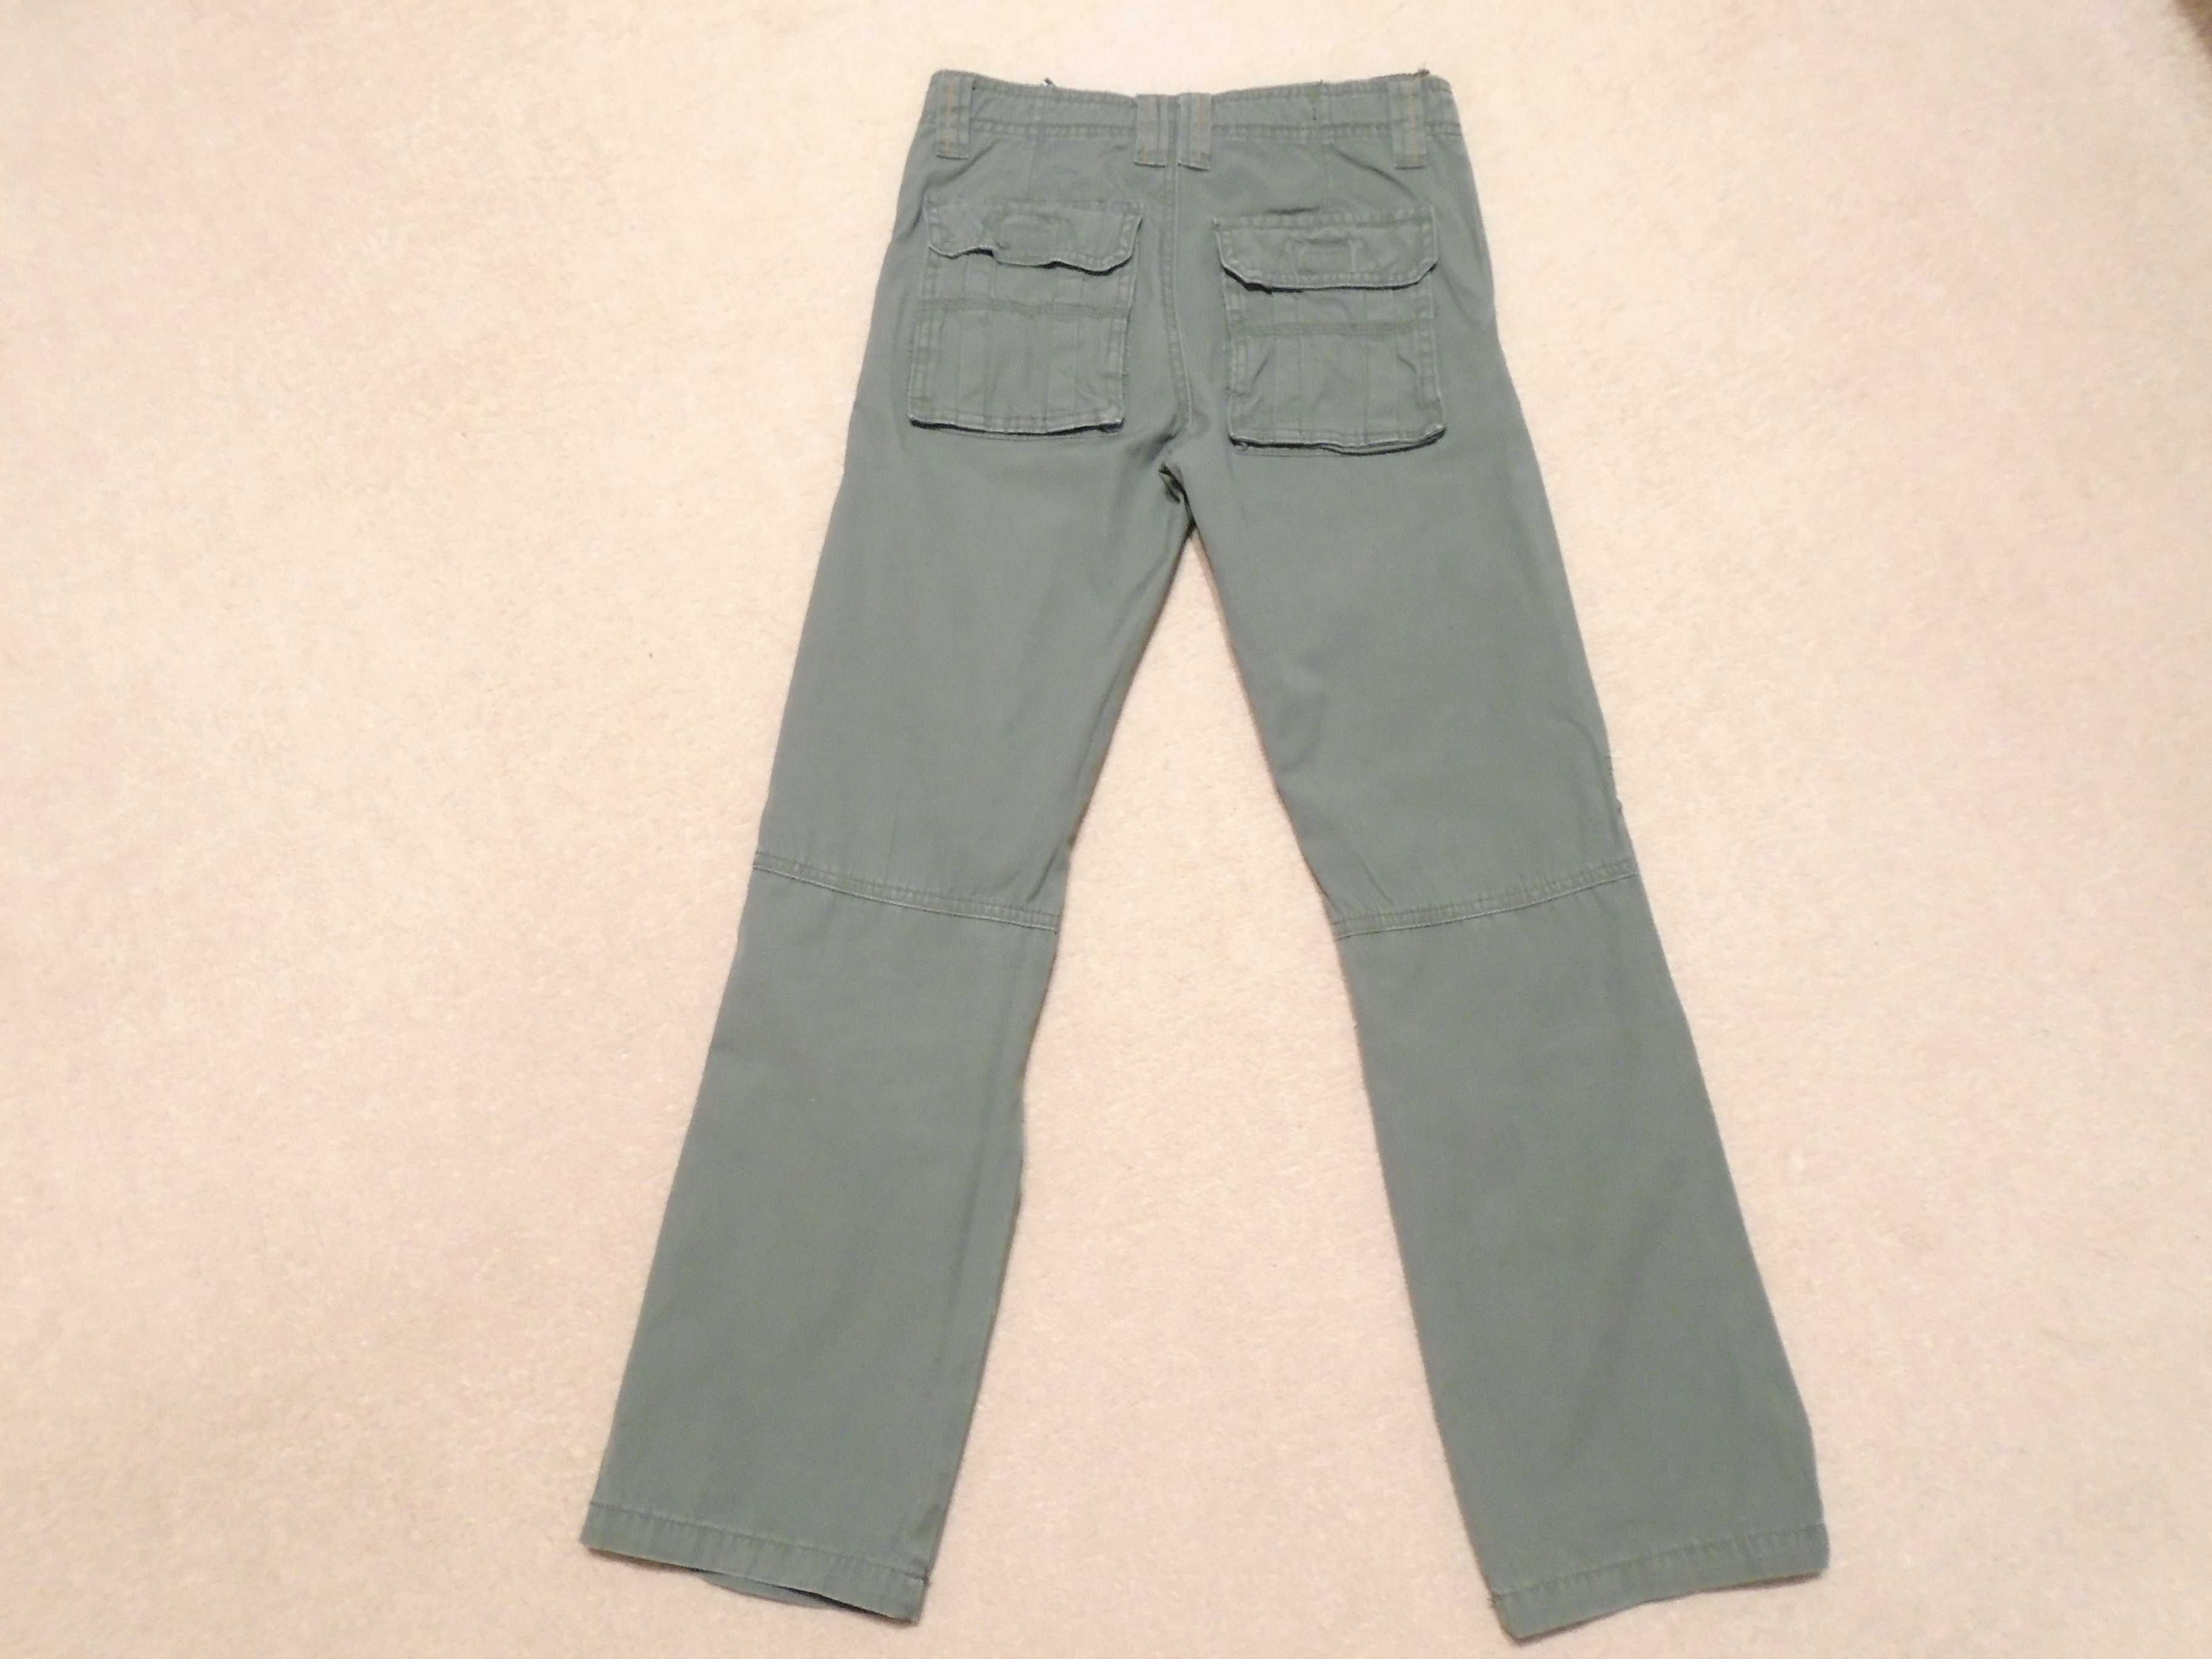 Spodnie chłopięce długie zielone 5-10-15 rozmiar 140 cm